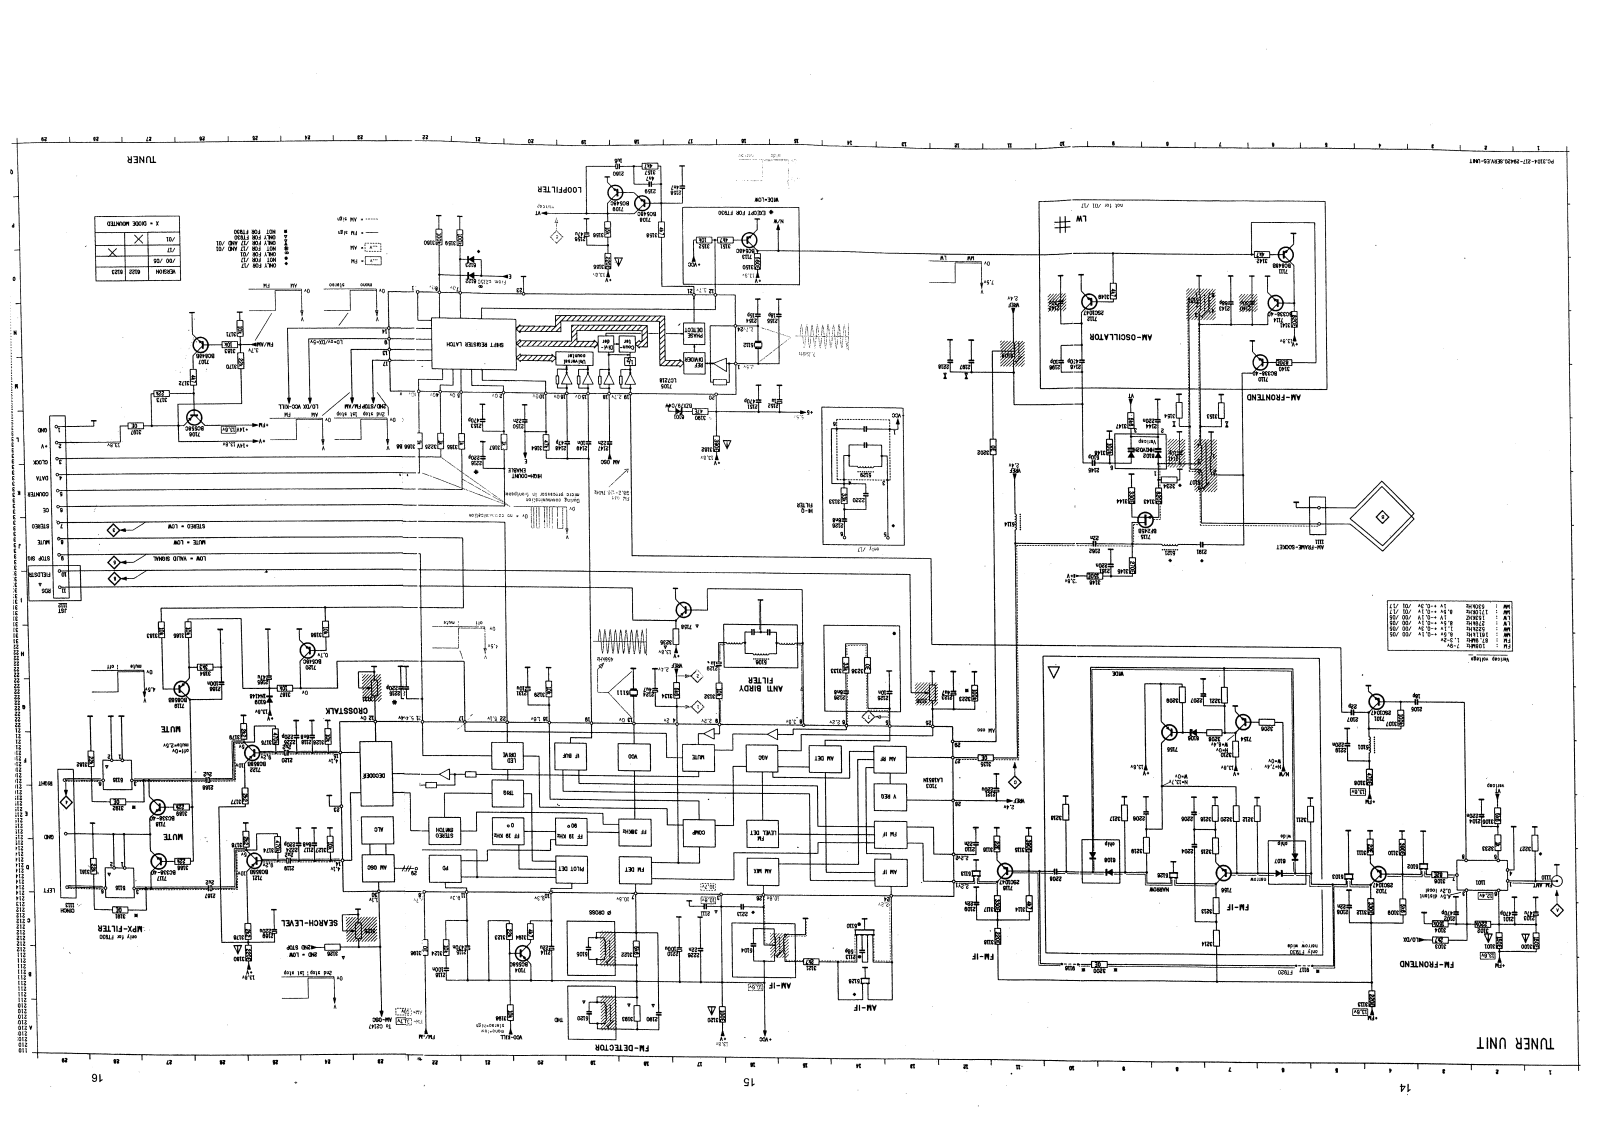 Philips FT-930 Schematic